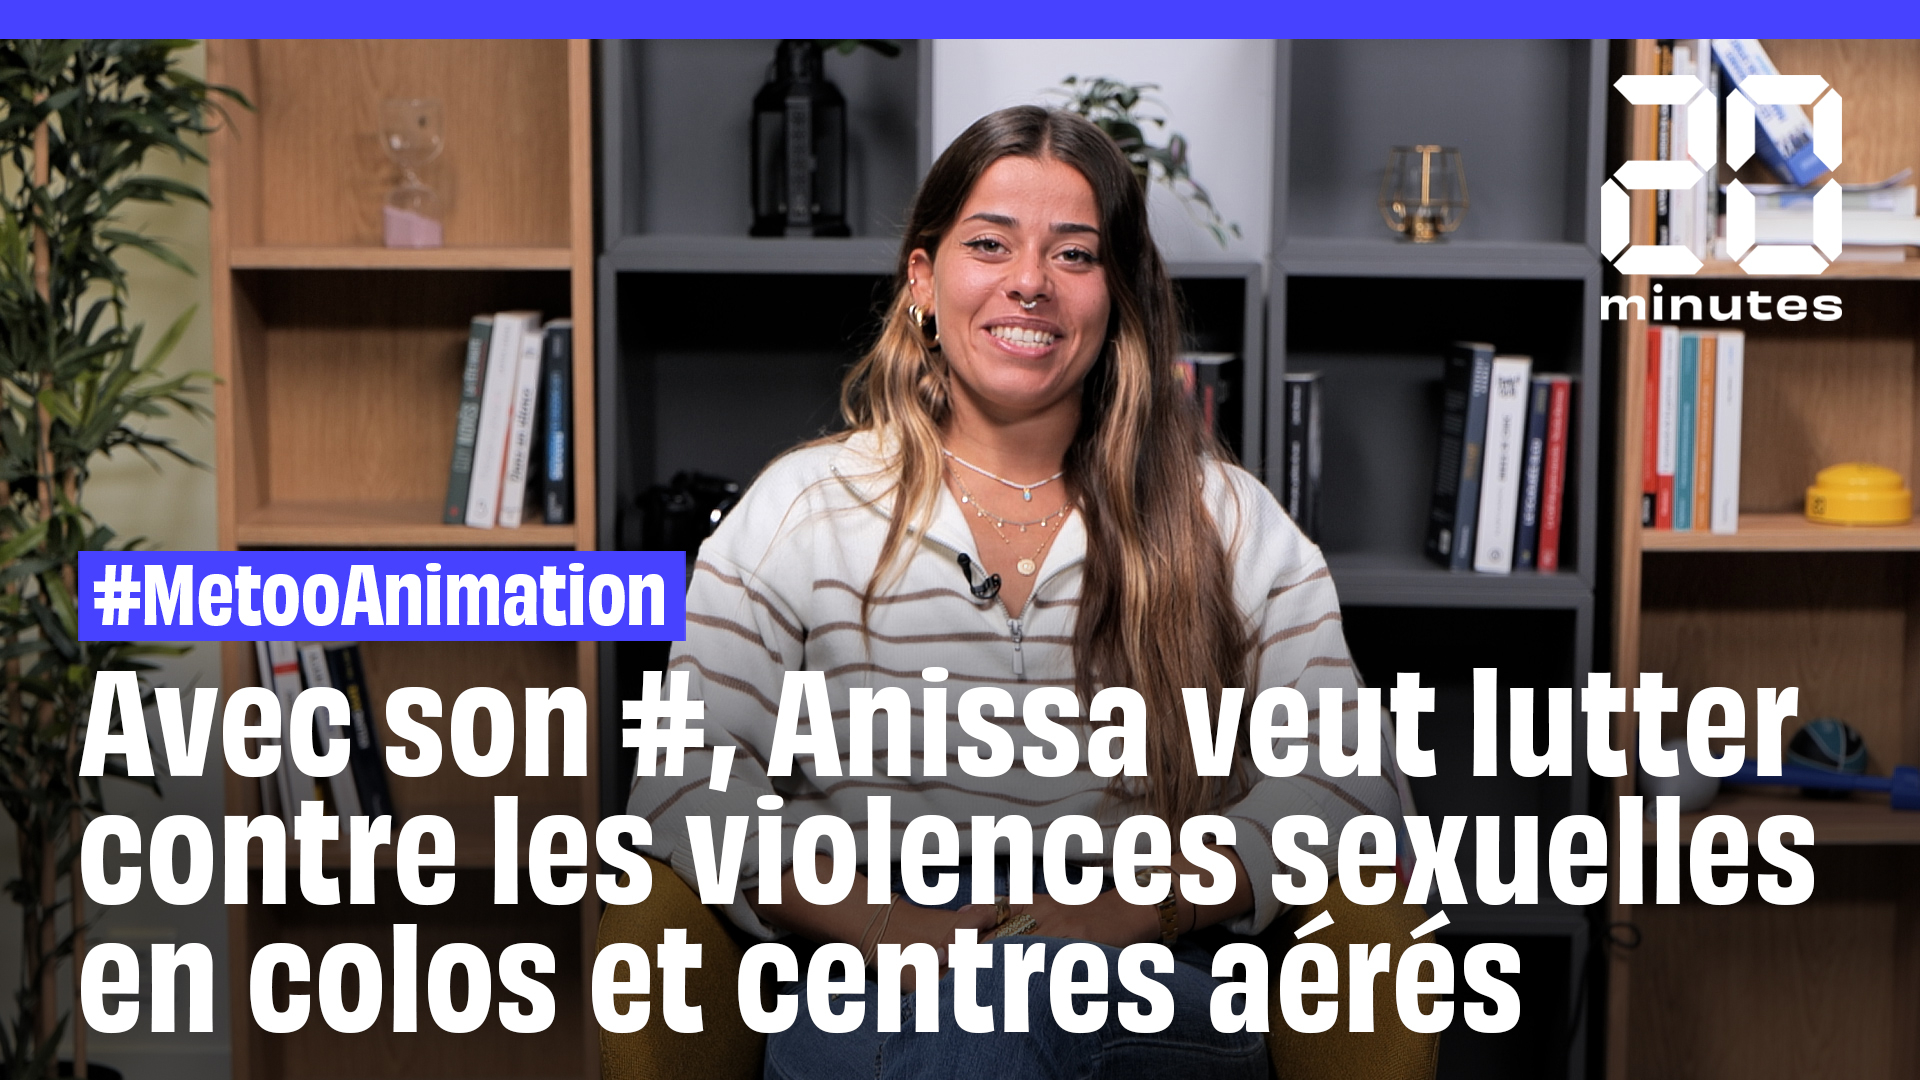 #MetooAnimation : « Le sujet des violences sexuelles en colonie de vacances est encore très tabou », dénonce Anissa